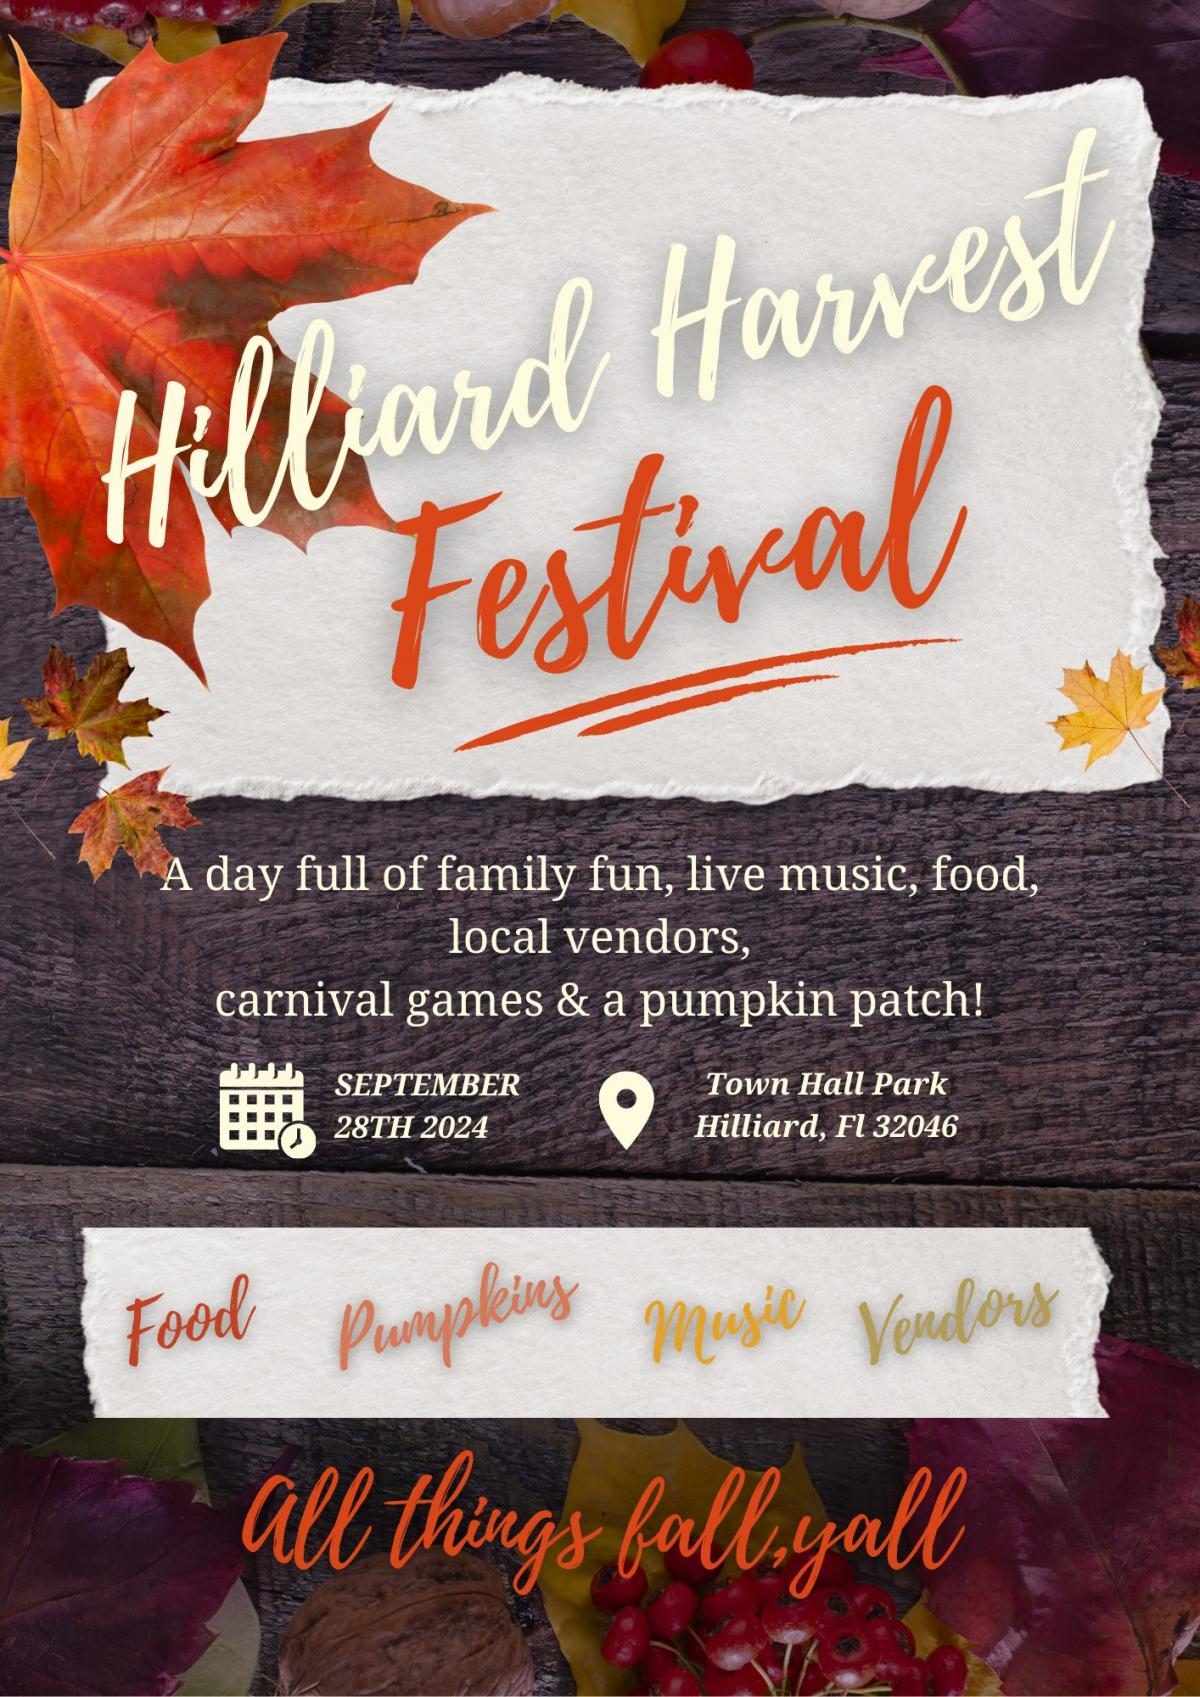 Hilliard Harvest Festival Flyer